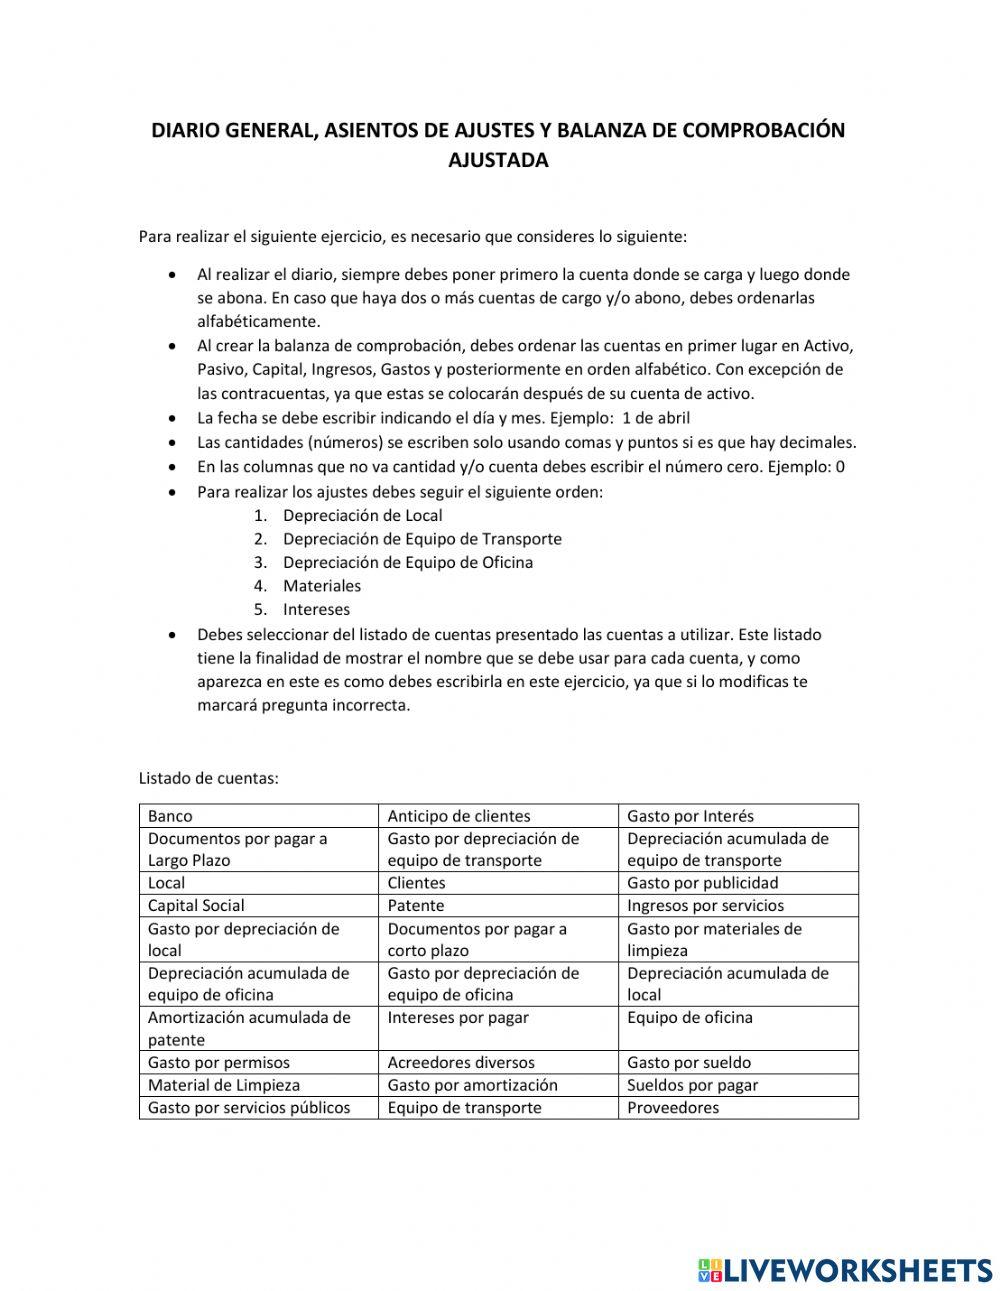 Diario General, Asientos de Ajuste y Balanza de Comprobación worksheet ...